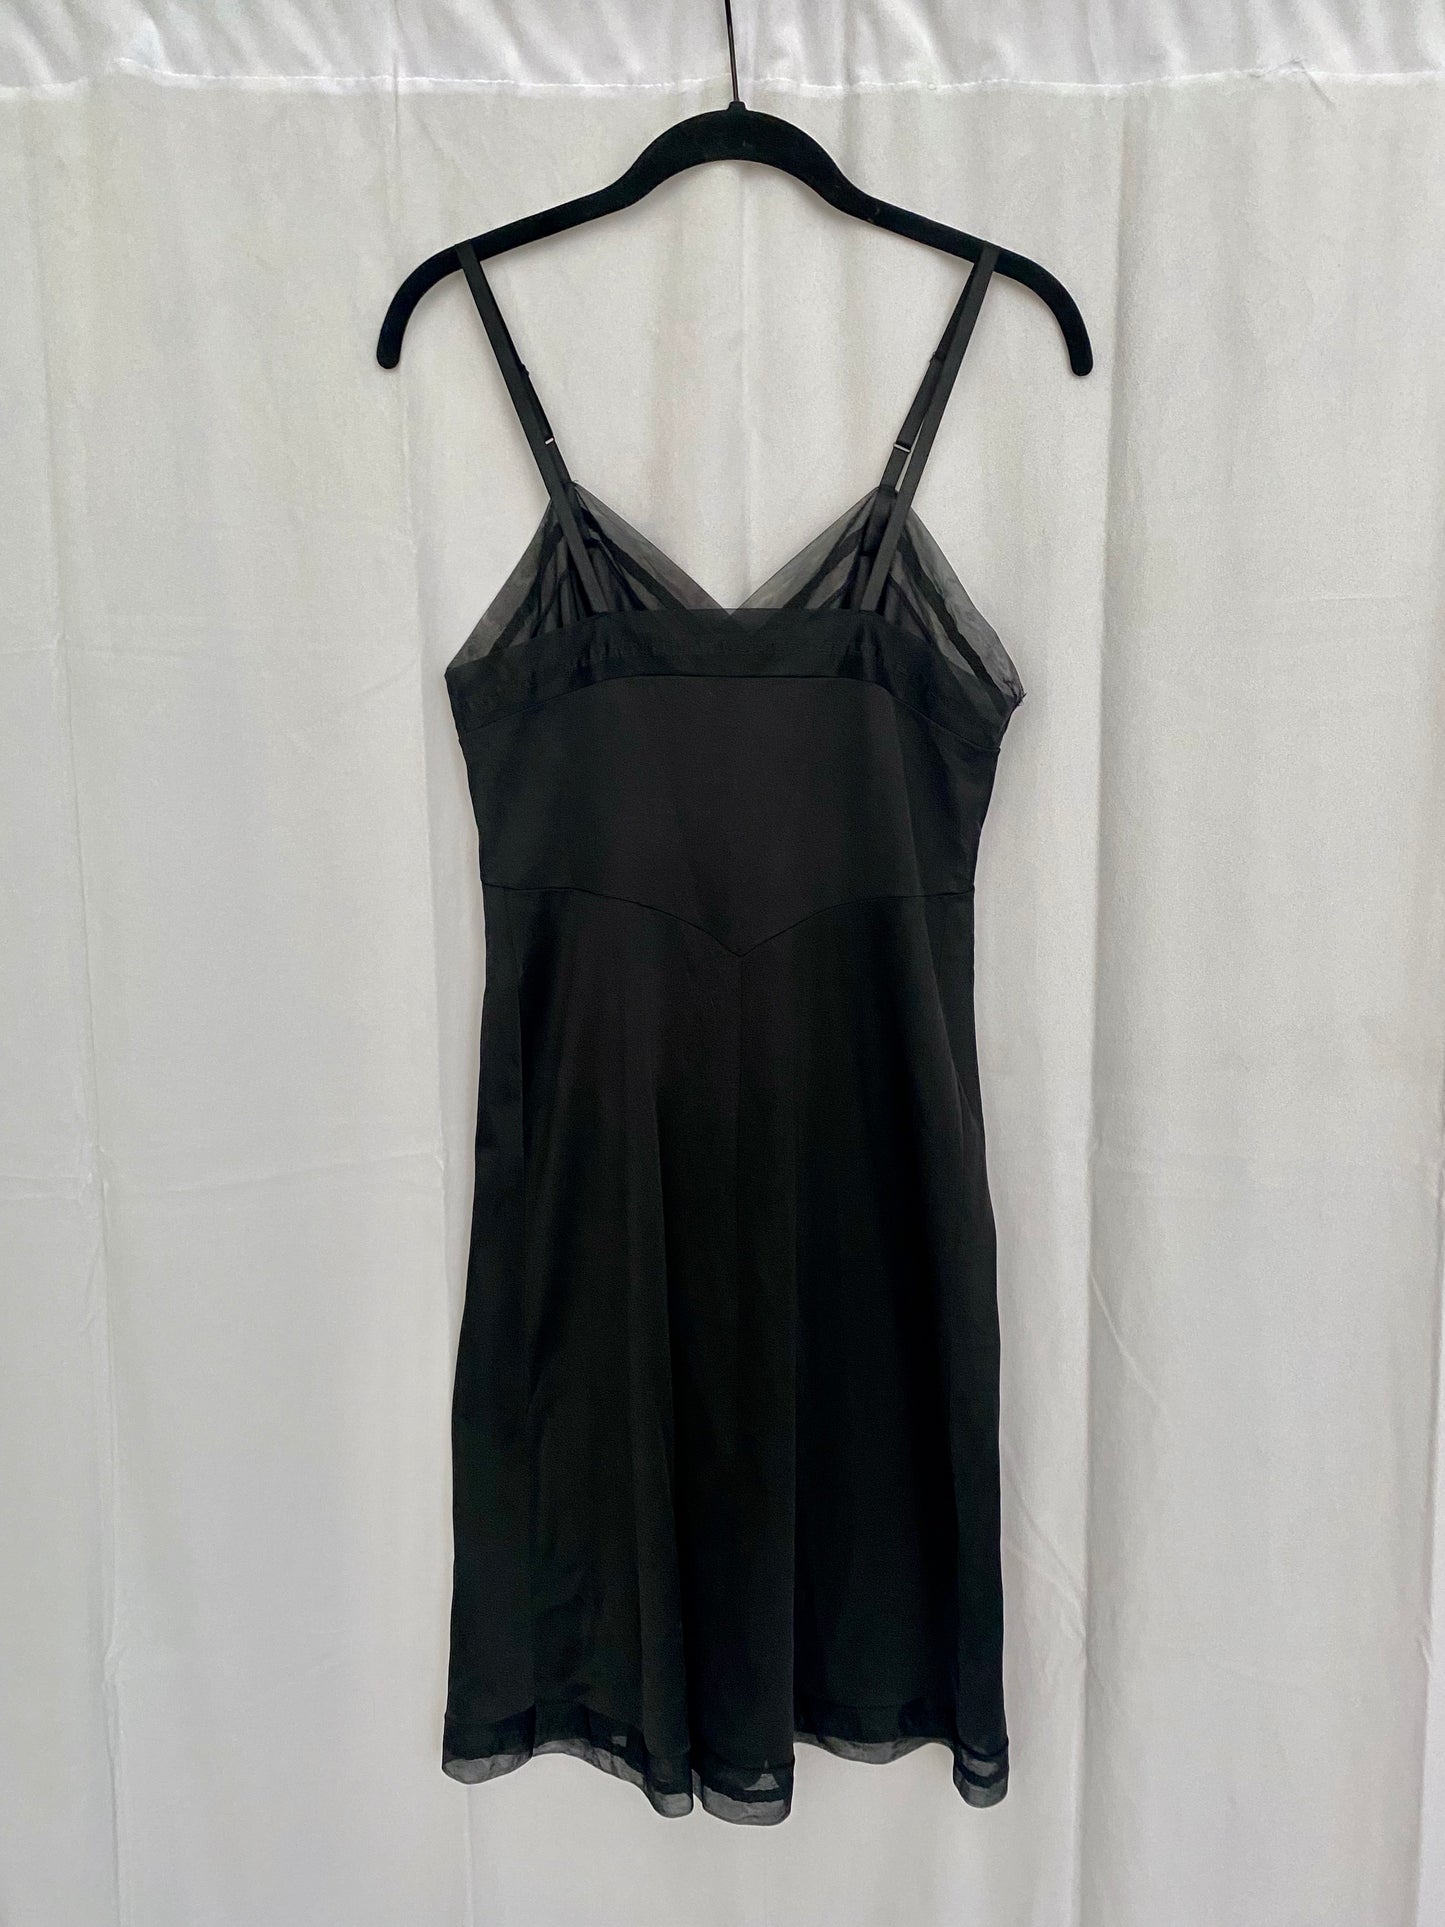 Vintage Vanity Fair Black Slip Dress